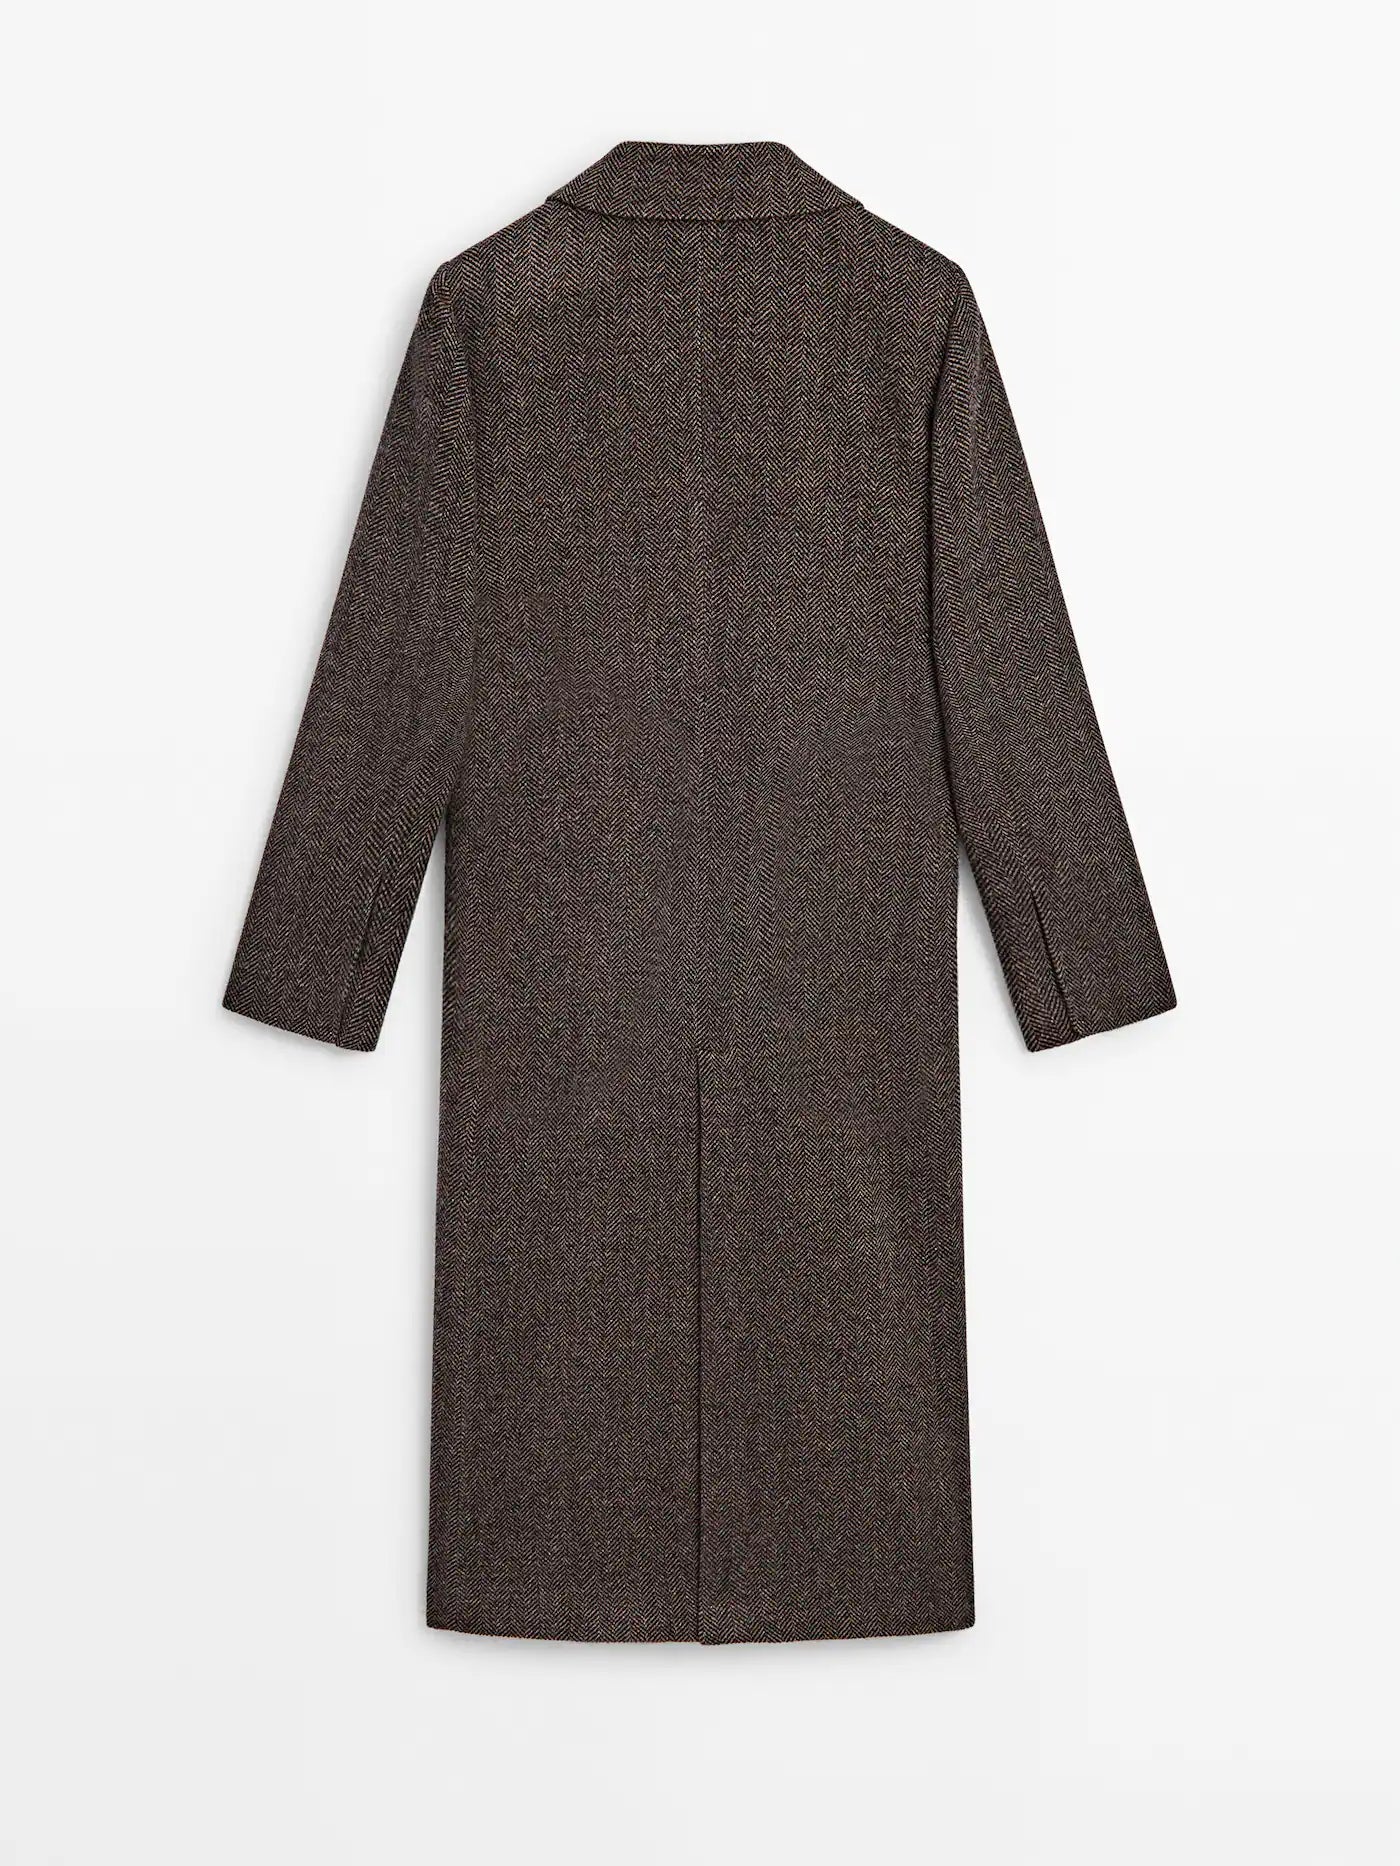 Herringbone wool coat